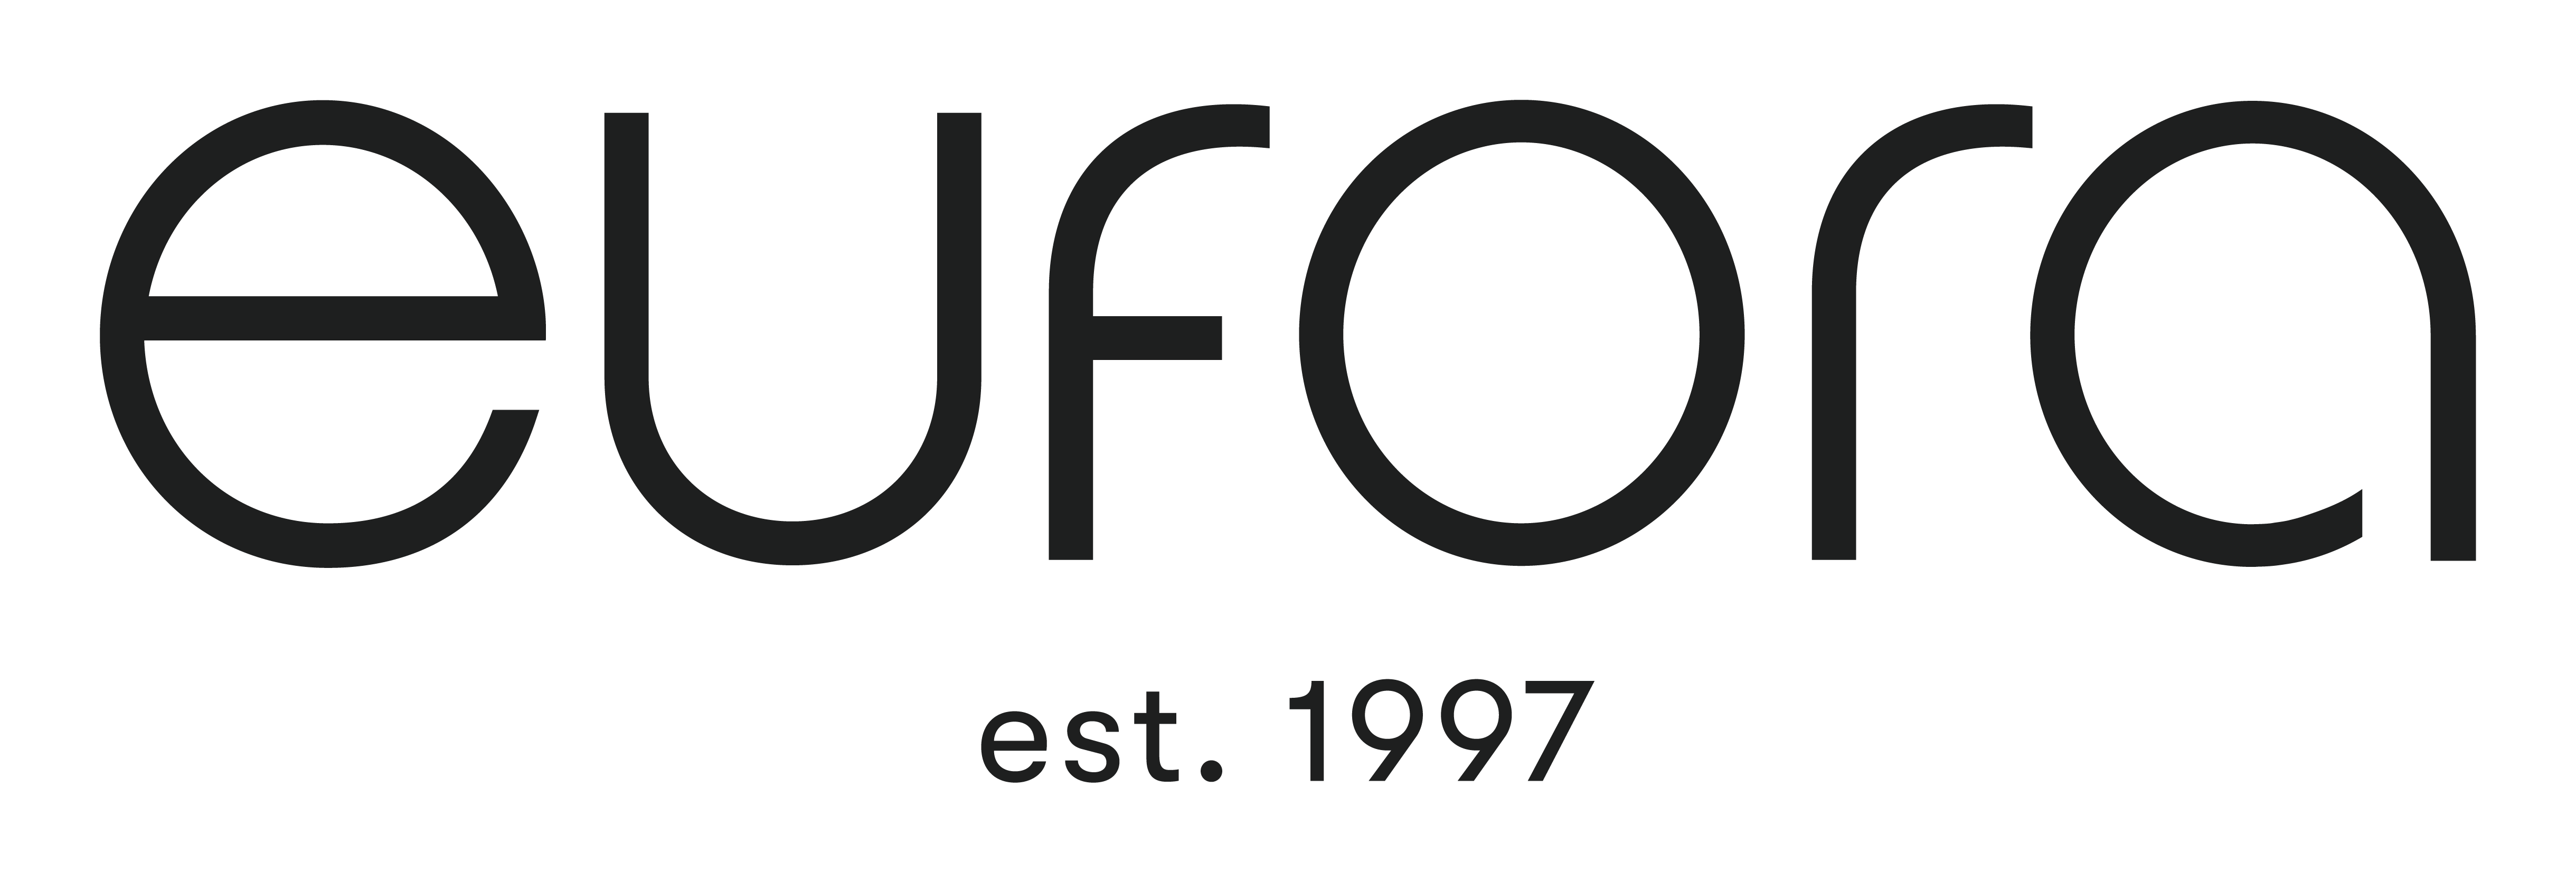 Eufora Logo est1997